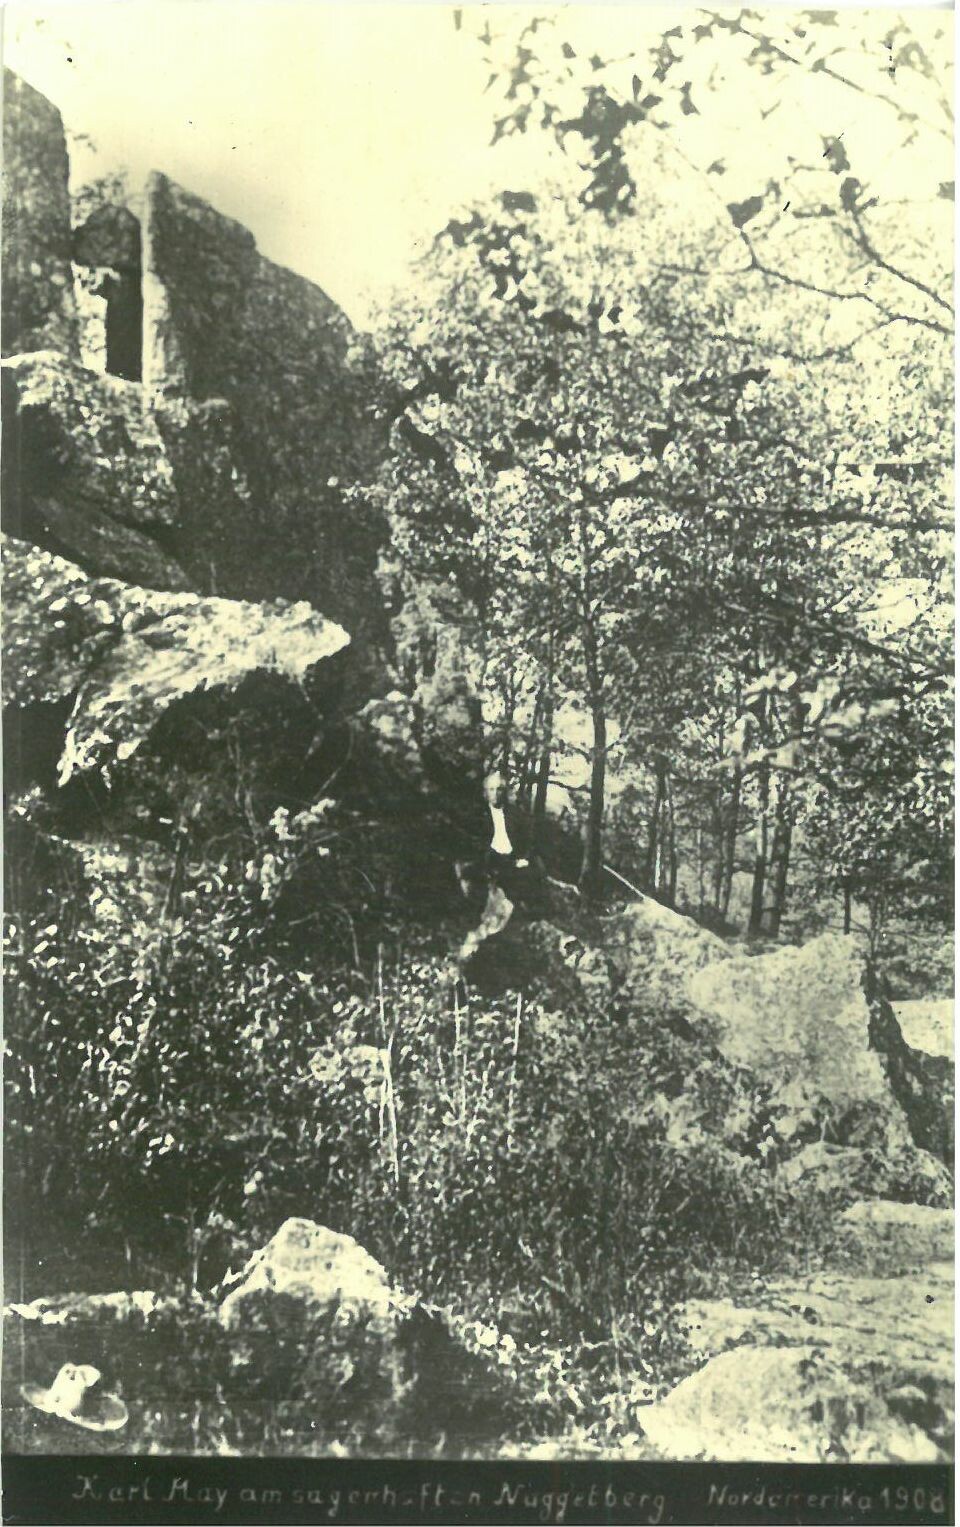 Karl May am sagenhaften Nuggetberge, Nordamerika 1908 (Karl-May-Museum gGmbH RR-R)